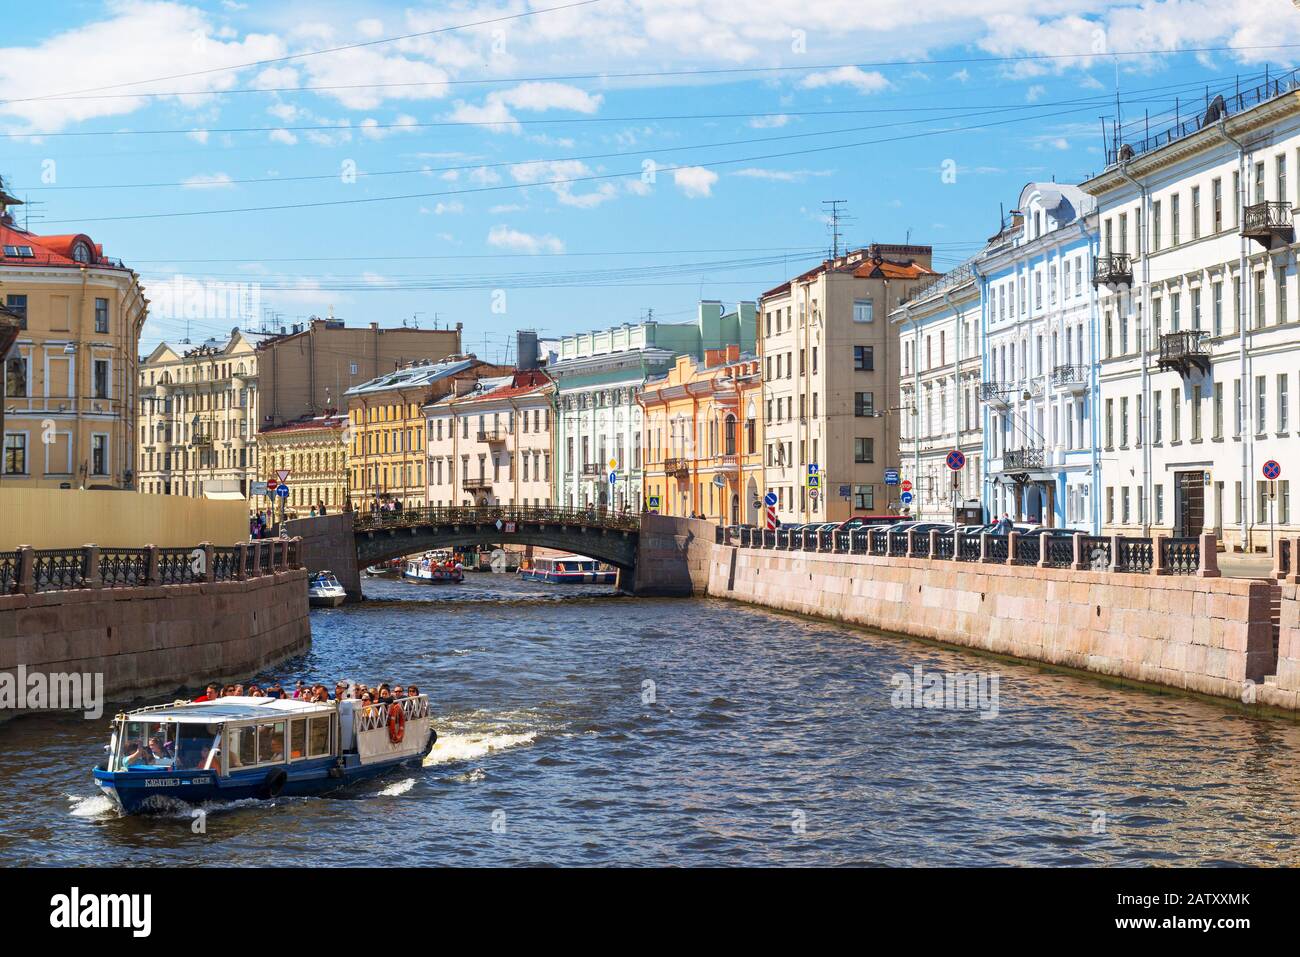 St. Petersburg, Russland - 14. JUNI 2014: Touristische Boote schwimmend auf dem moyka River. St. Petersburg war die Hauptstadt von Russland und zieht viele Touristen an. Stockfoto